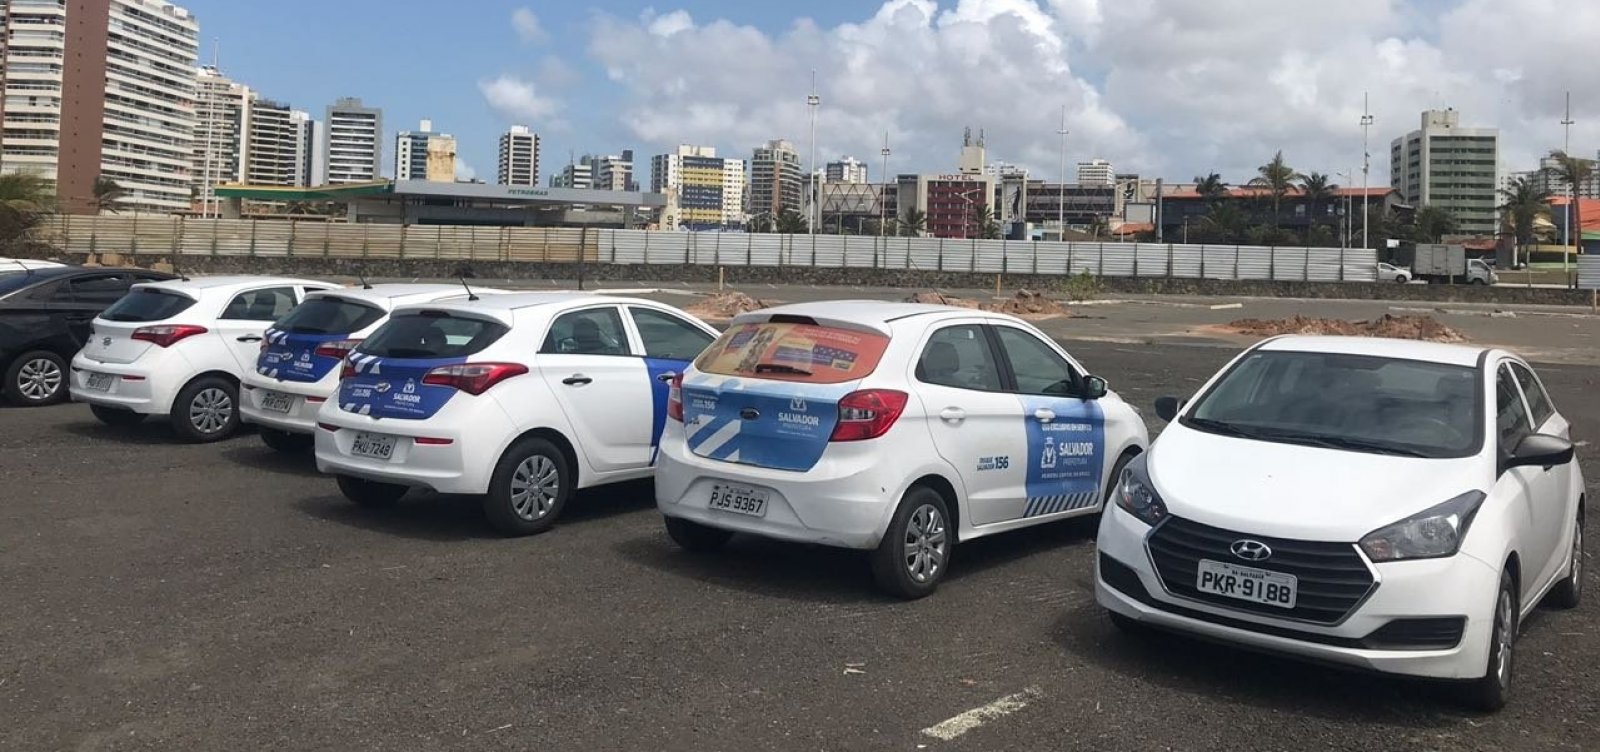 Carros flagrados em evento de Zé Ronaldo pertencem a empresa contratada pela prefeitura